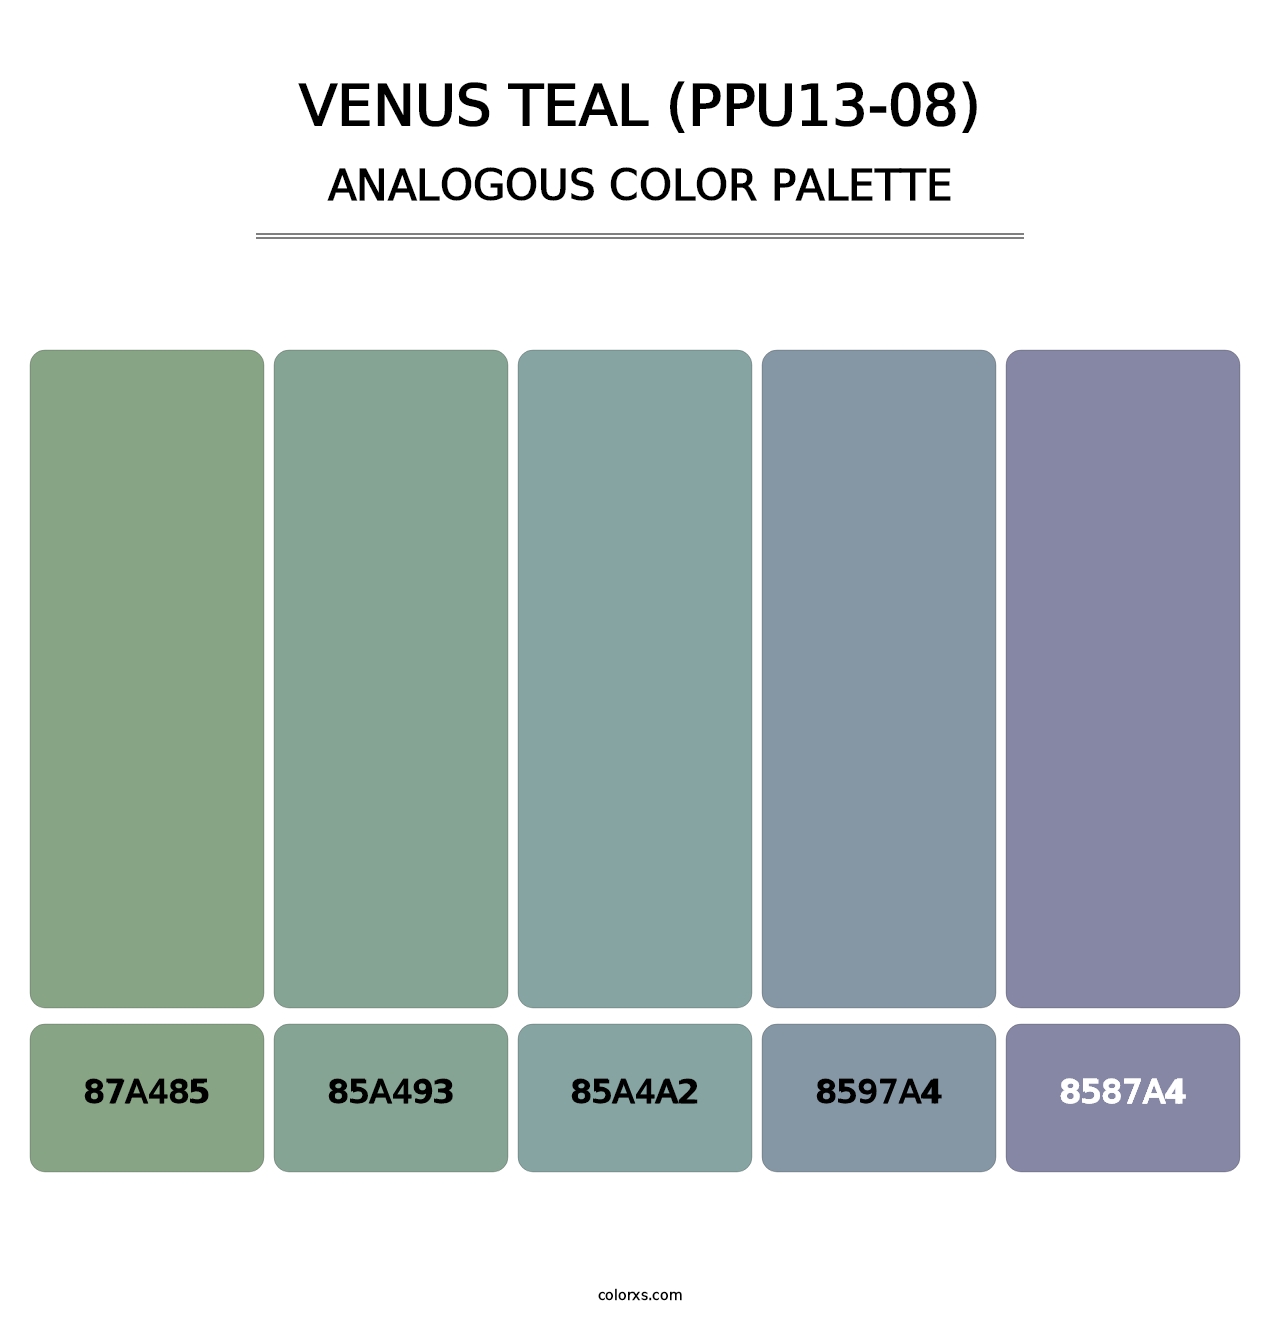 Venus Teal (PPU13-08) - Analogous Color Palette